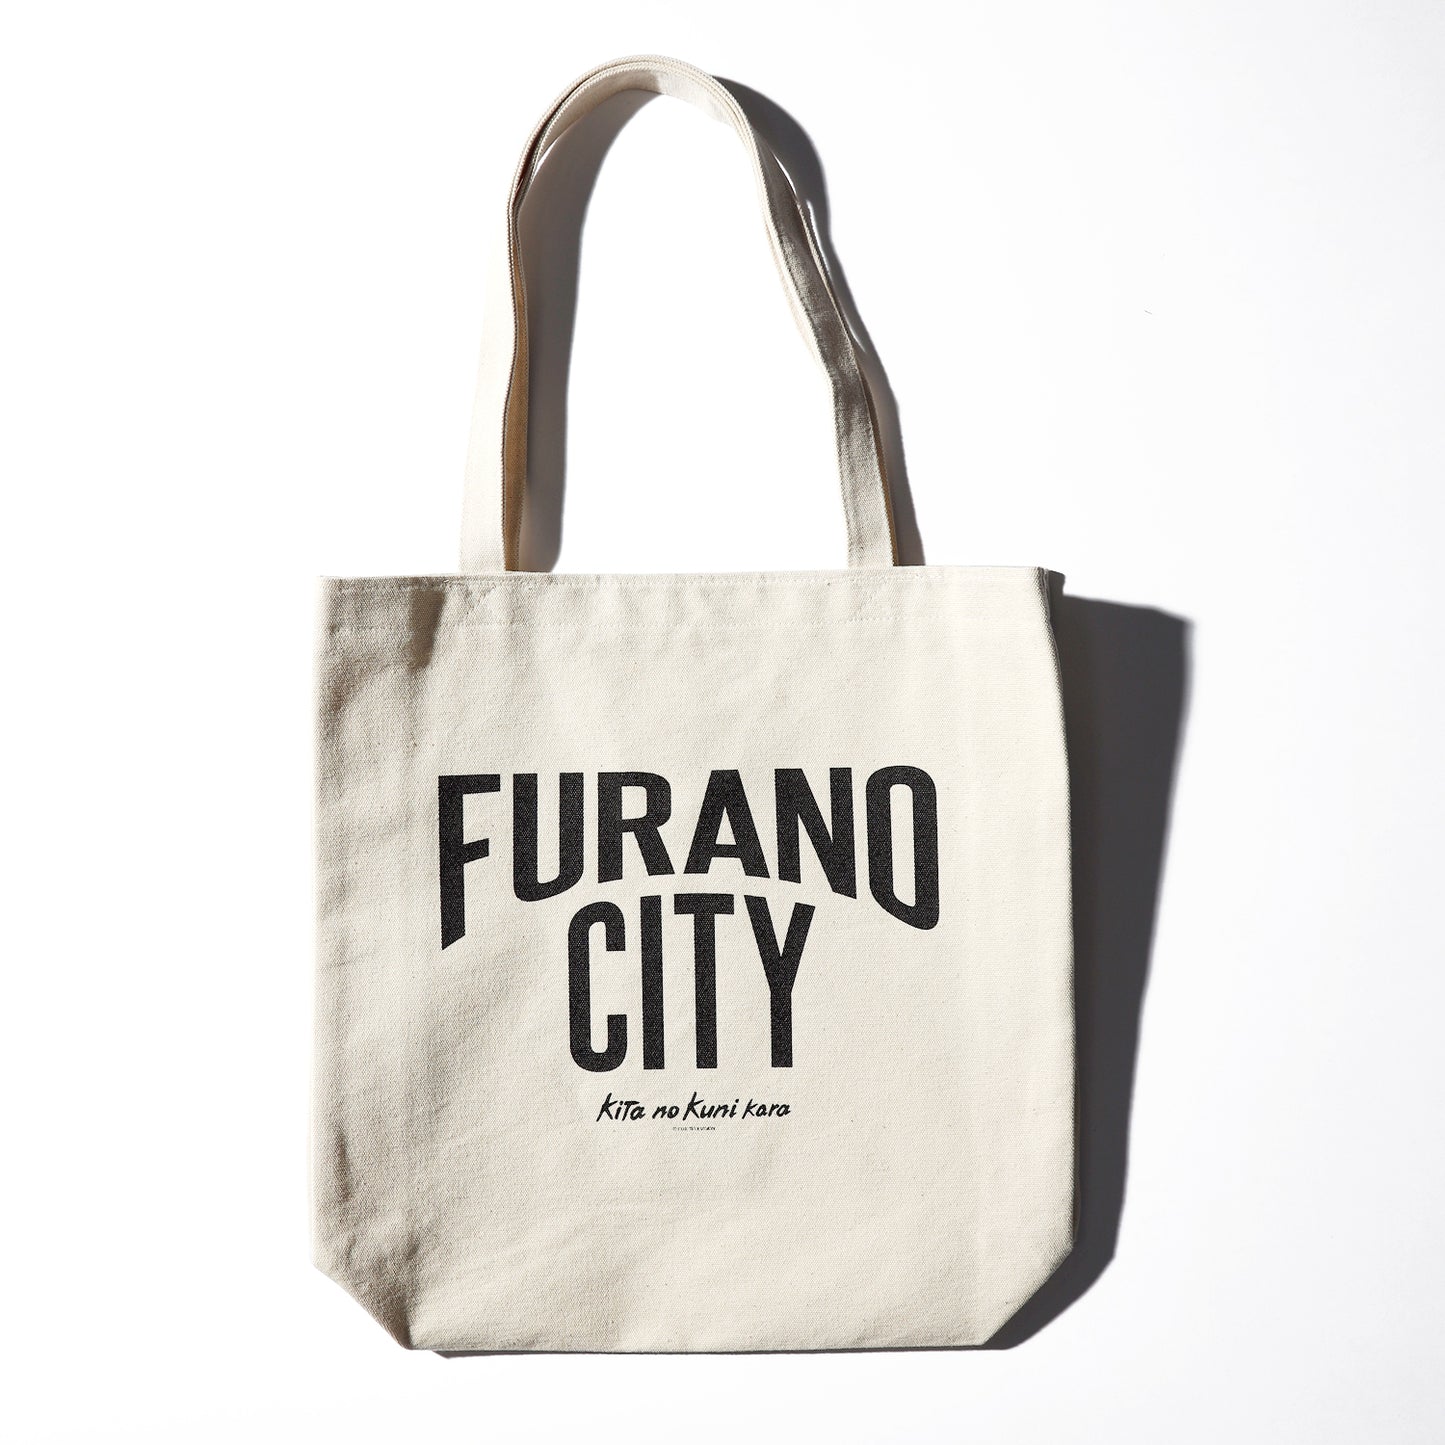 FURANO CITY tote bag